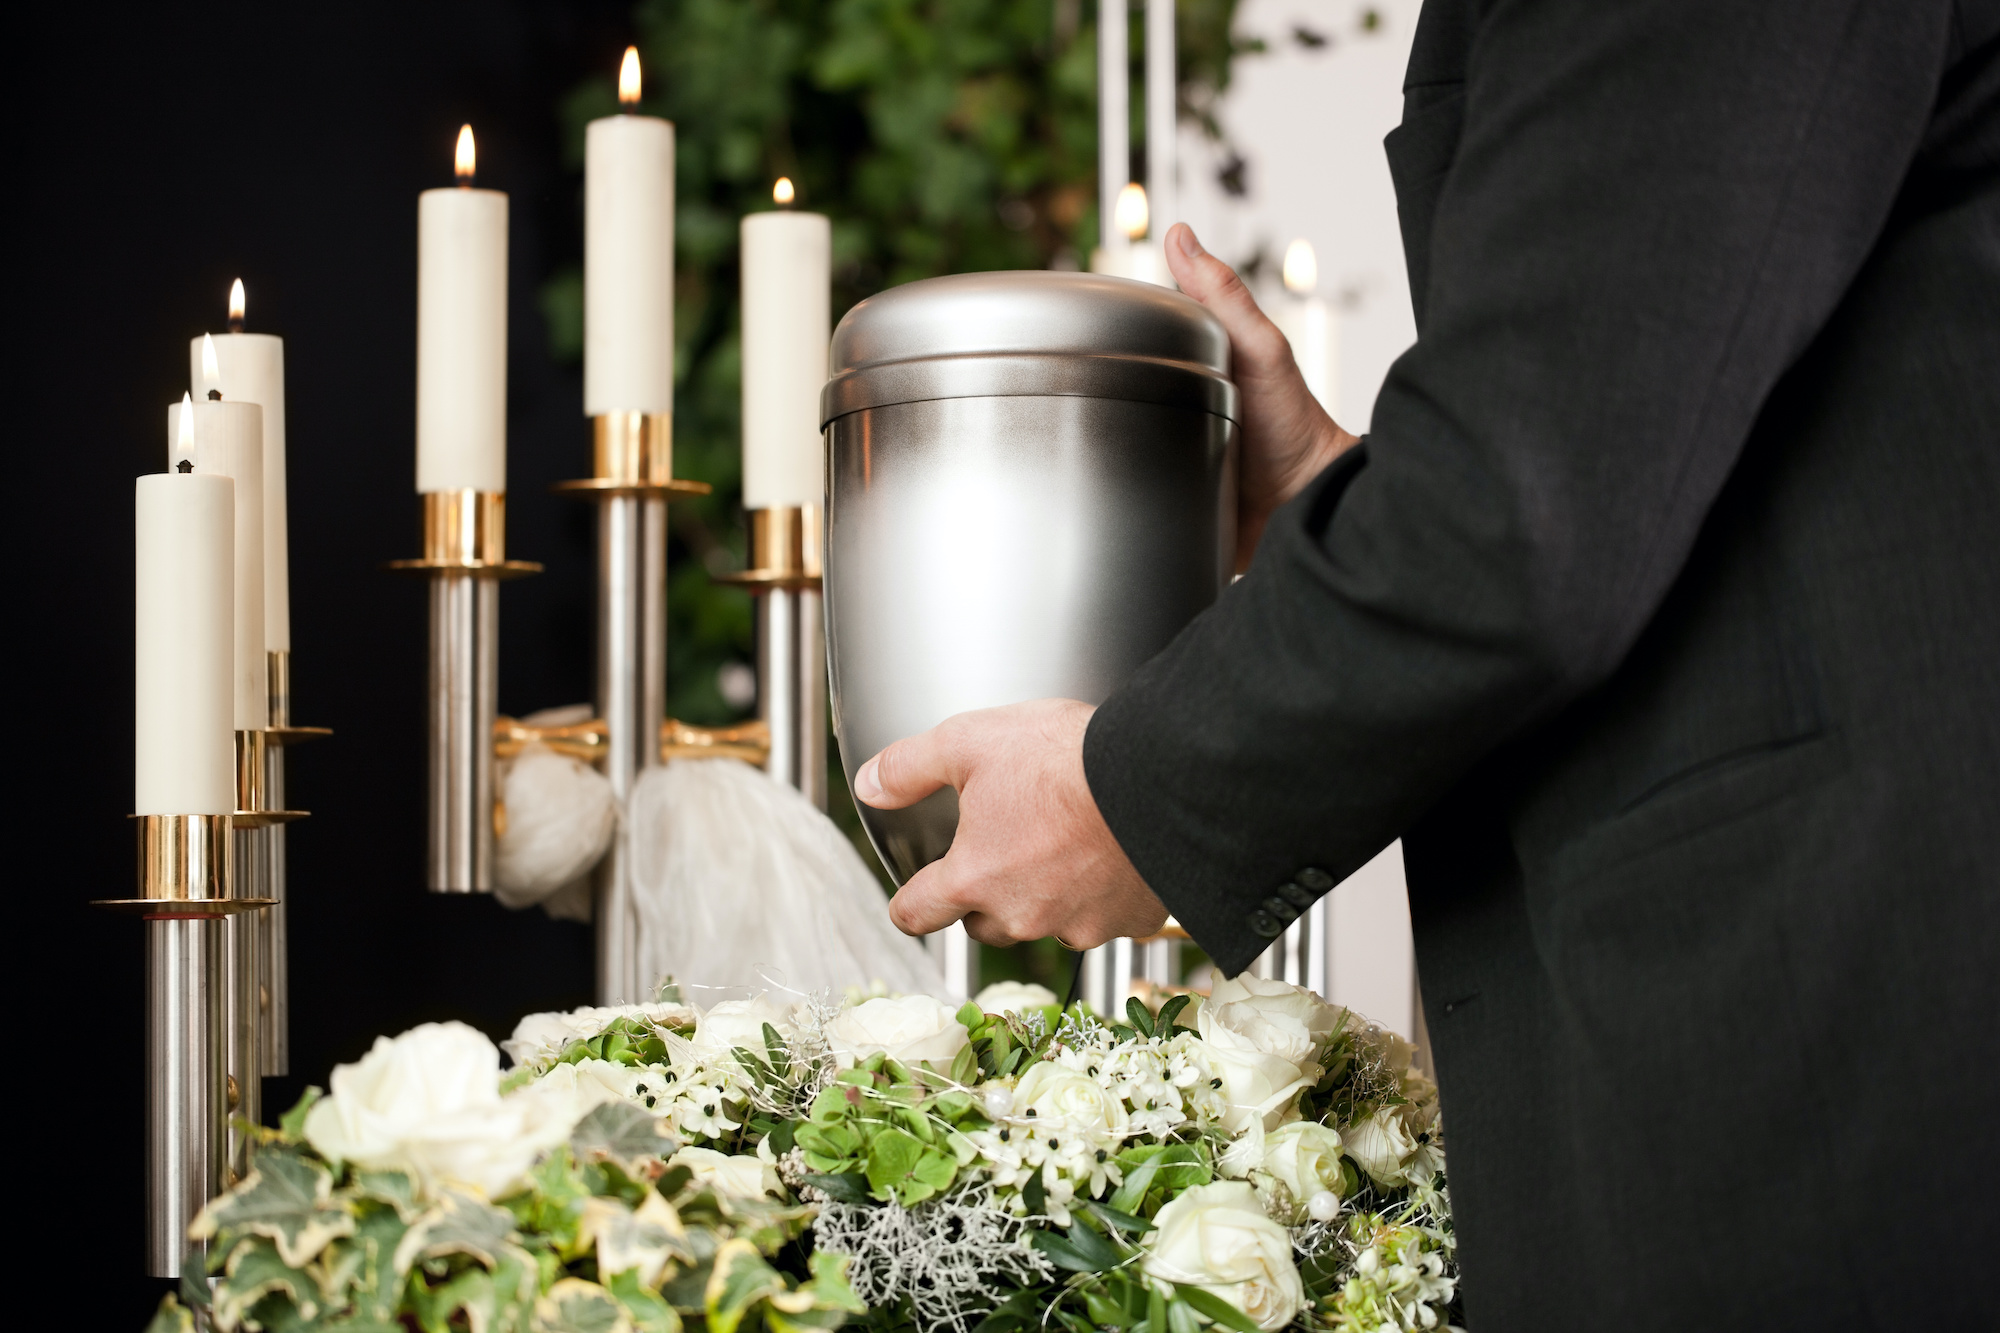 Personne tenant une urne funéraire durant des funérailles